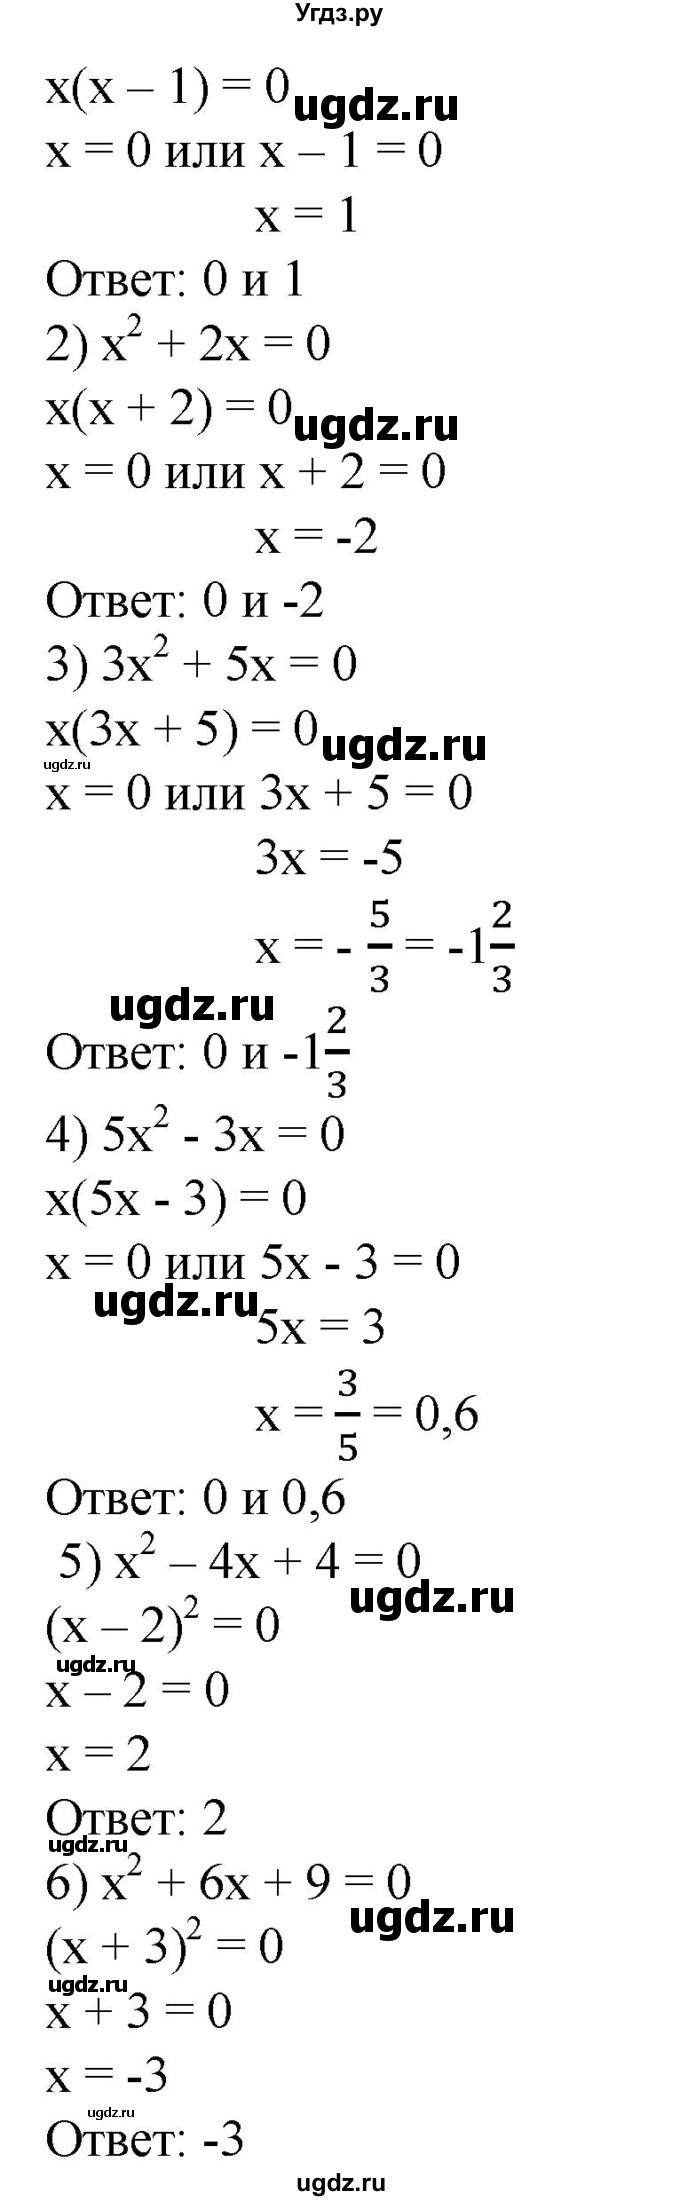 410. Решить квадратное уравнение, разложив его левую часть на множители:
1) x^2 – x =0;
2) x^2 +2x = 0;
3) 3x^2 +5x = 0;
4) 5x^2 – 3x =0;
5) x^2 – 4x +4 =0;
6) x^2 + 6x +9 =0.